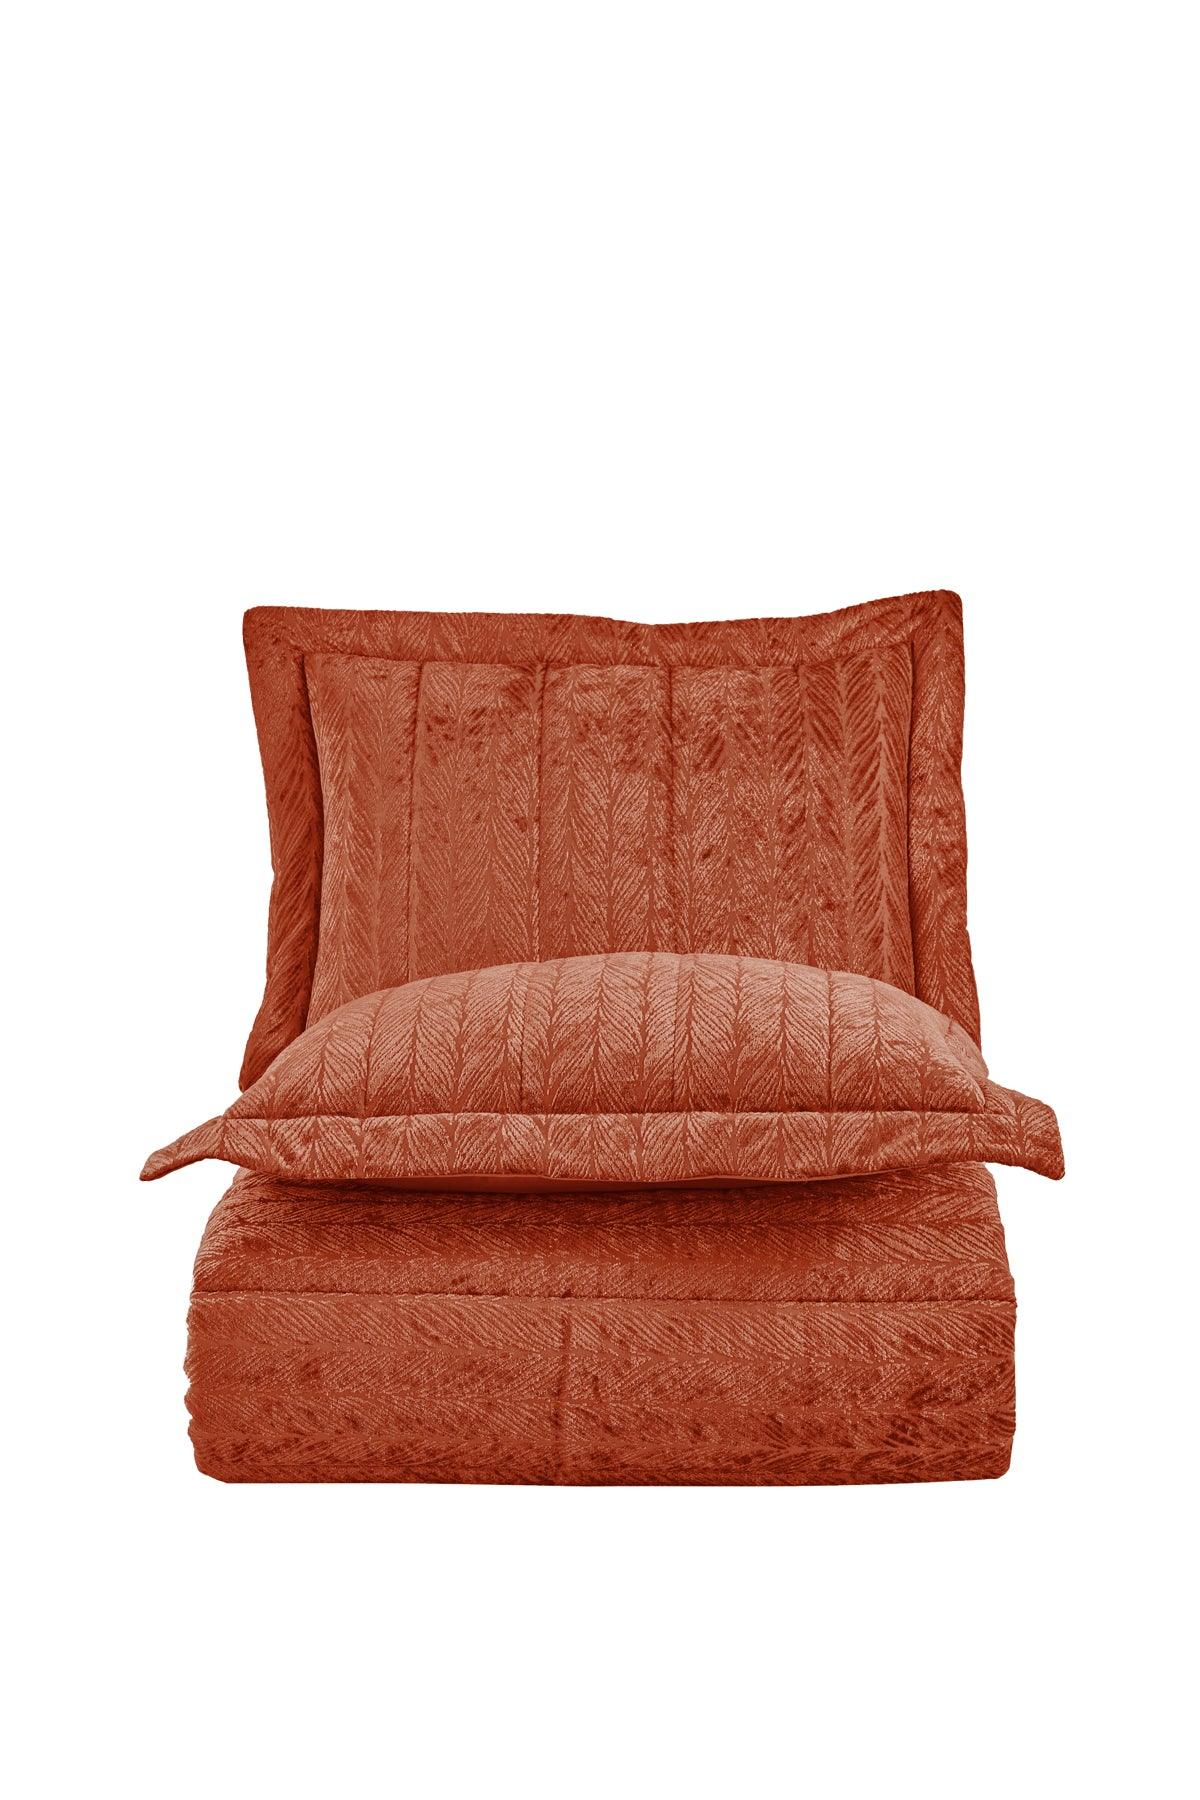 Comfort yeni nesil uykuseti - 6 parça Velvet Tarçın (230x220cm) - Elart Home